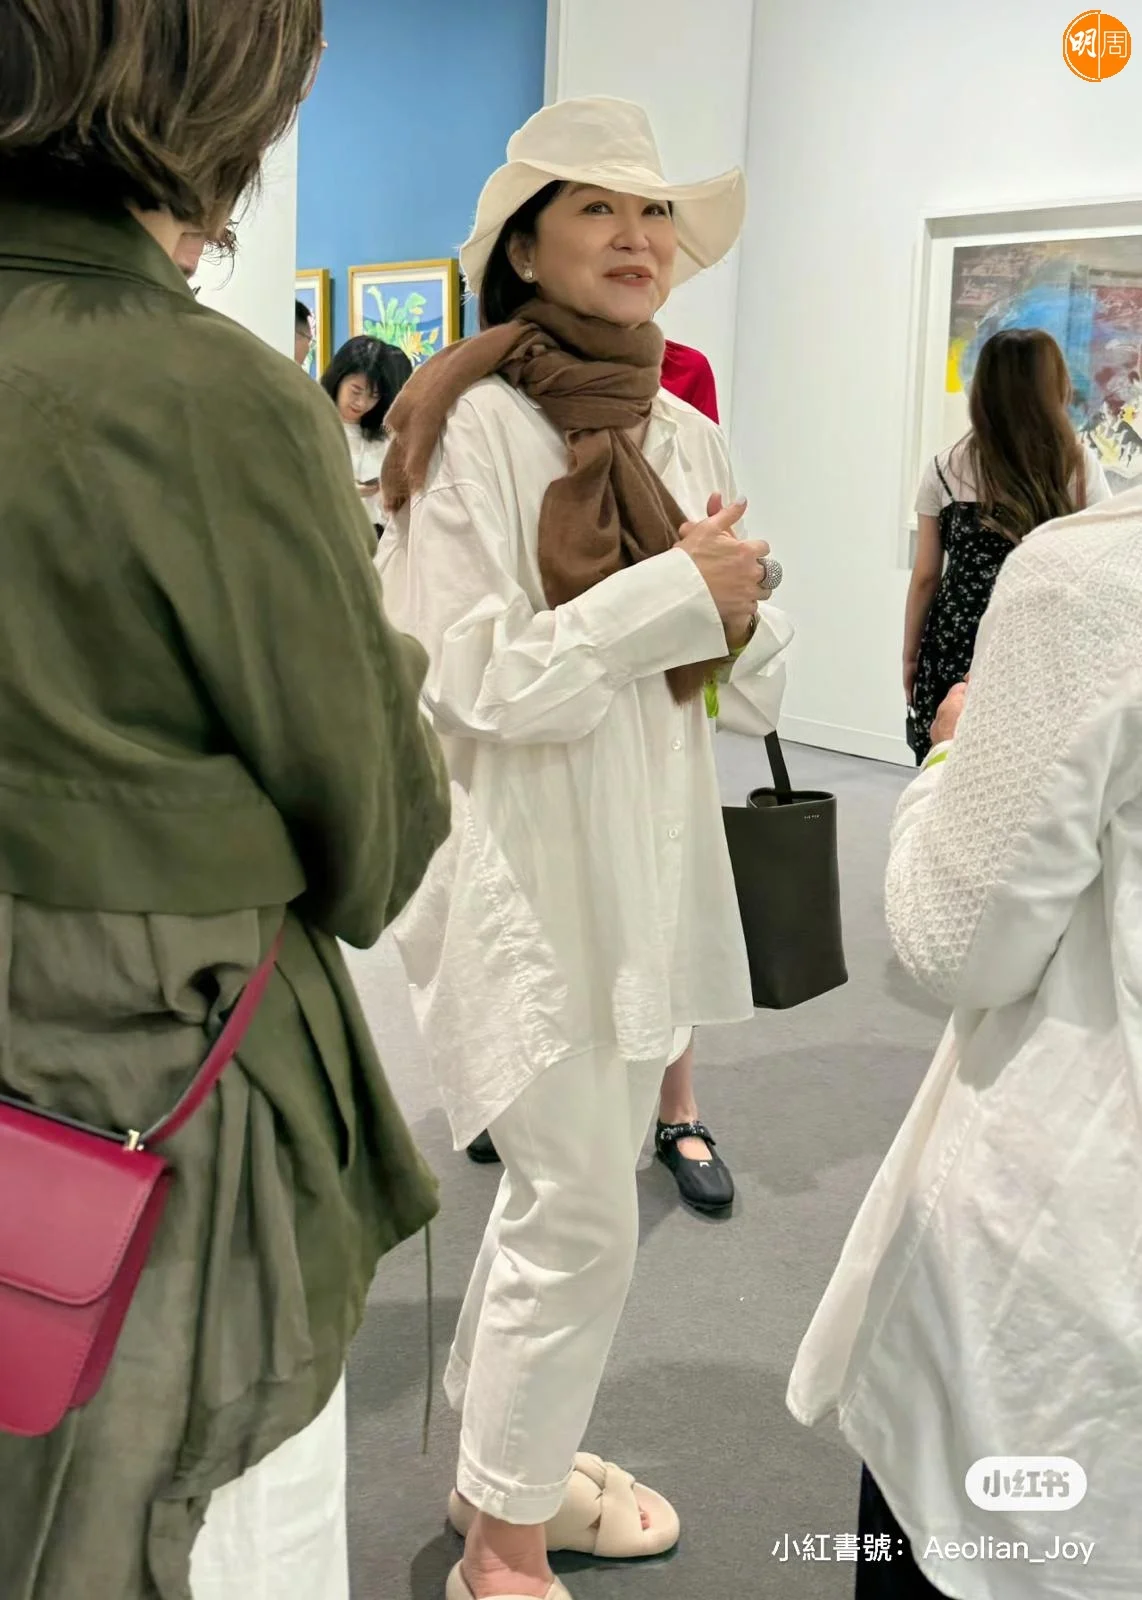 青霞去藝術展被不少網民拍下她的身影。